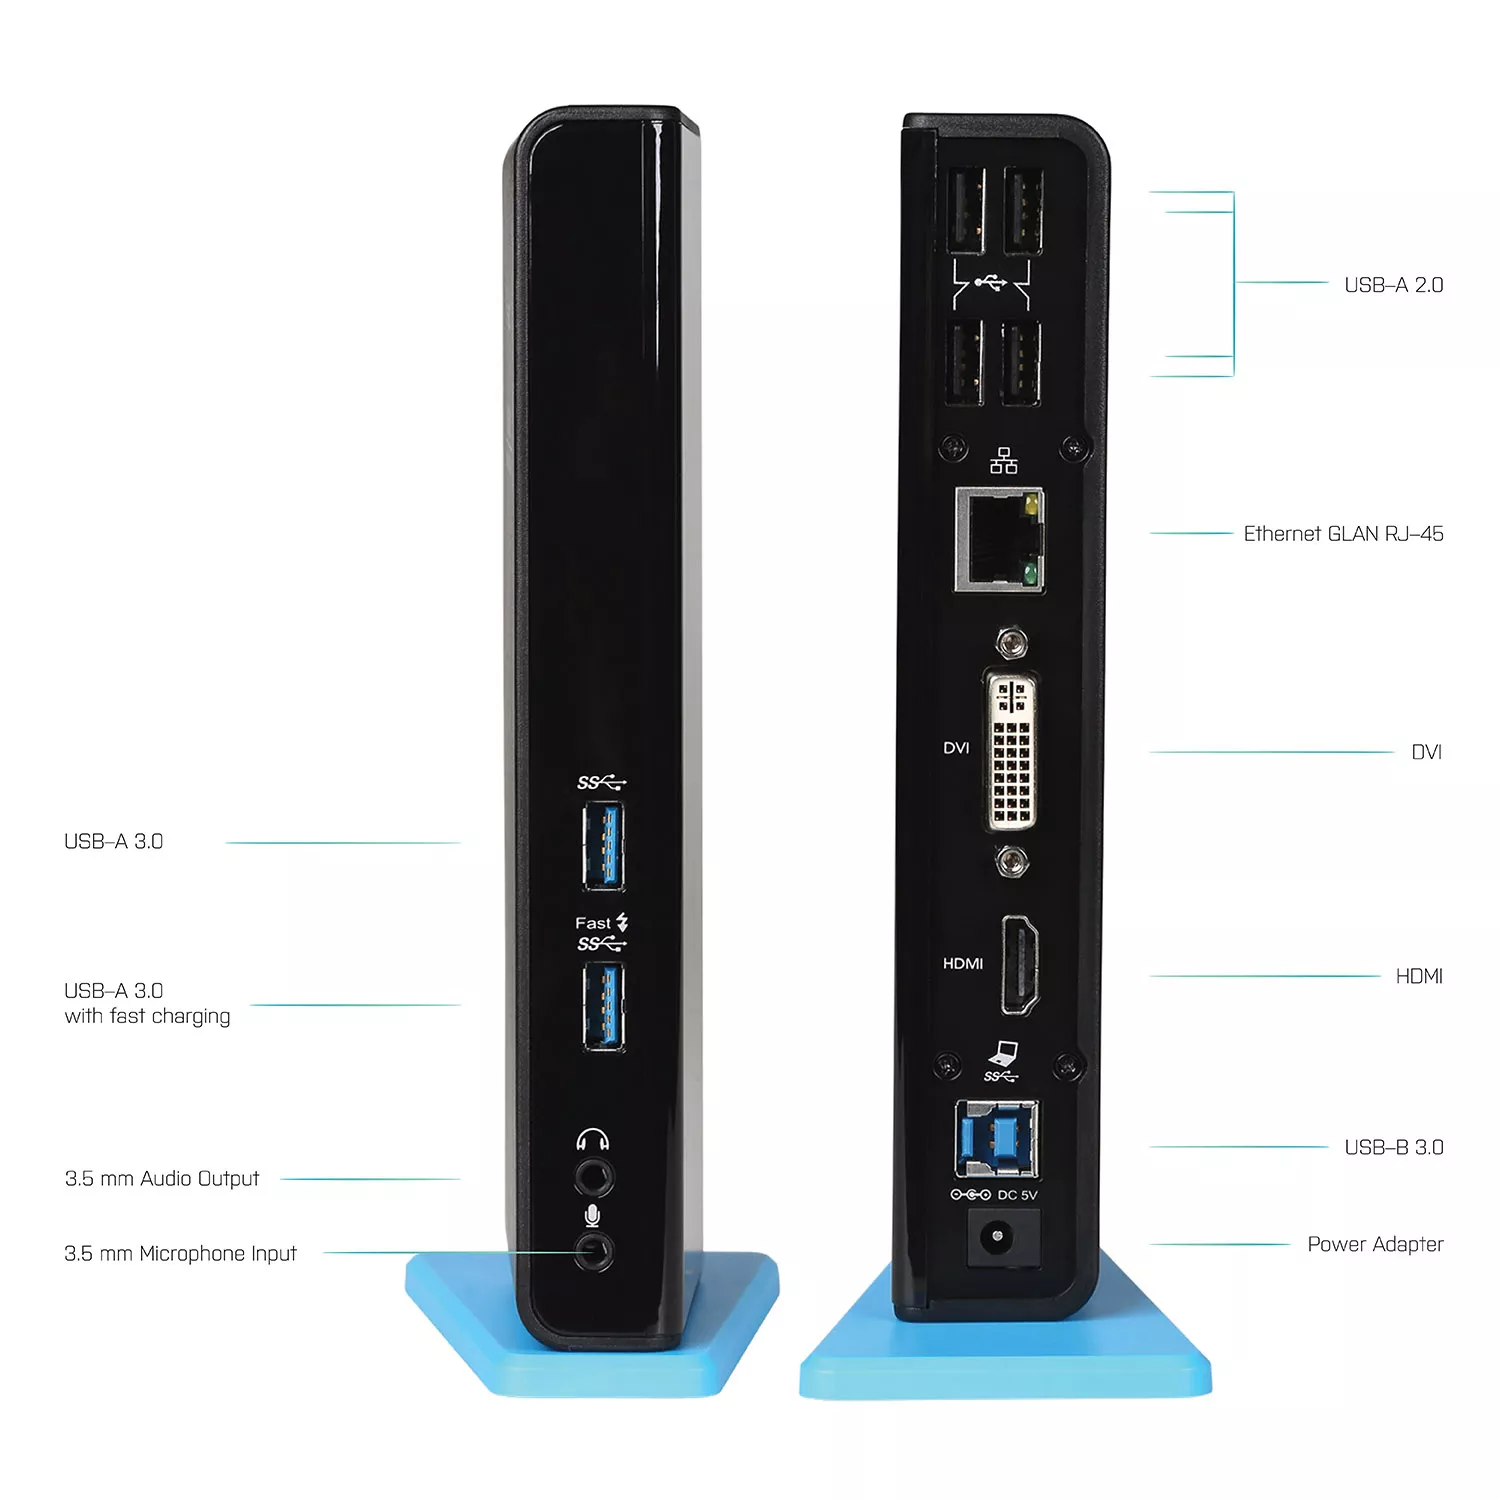 Vente I-TEC USB 3.0 Dual Docking Station 1xDVI 1xHDMI i-tec au meilleur prix - visuel 6